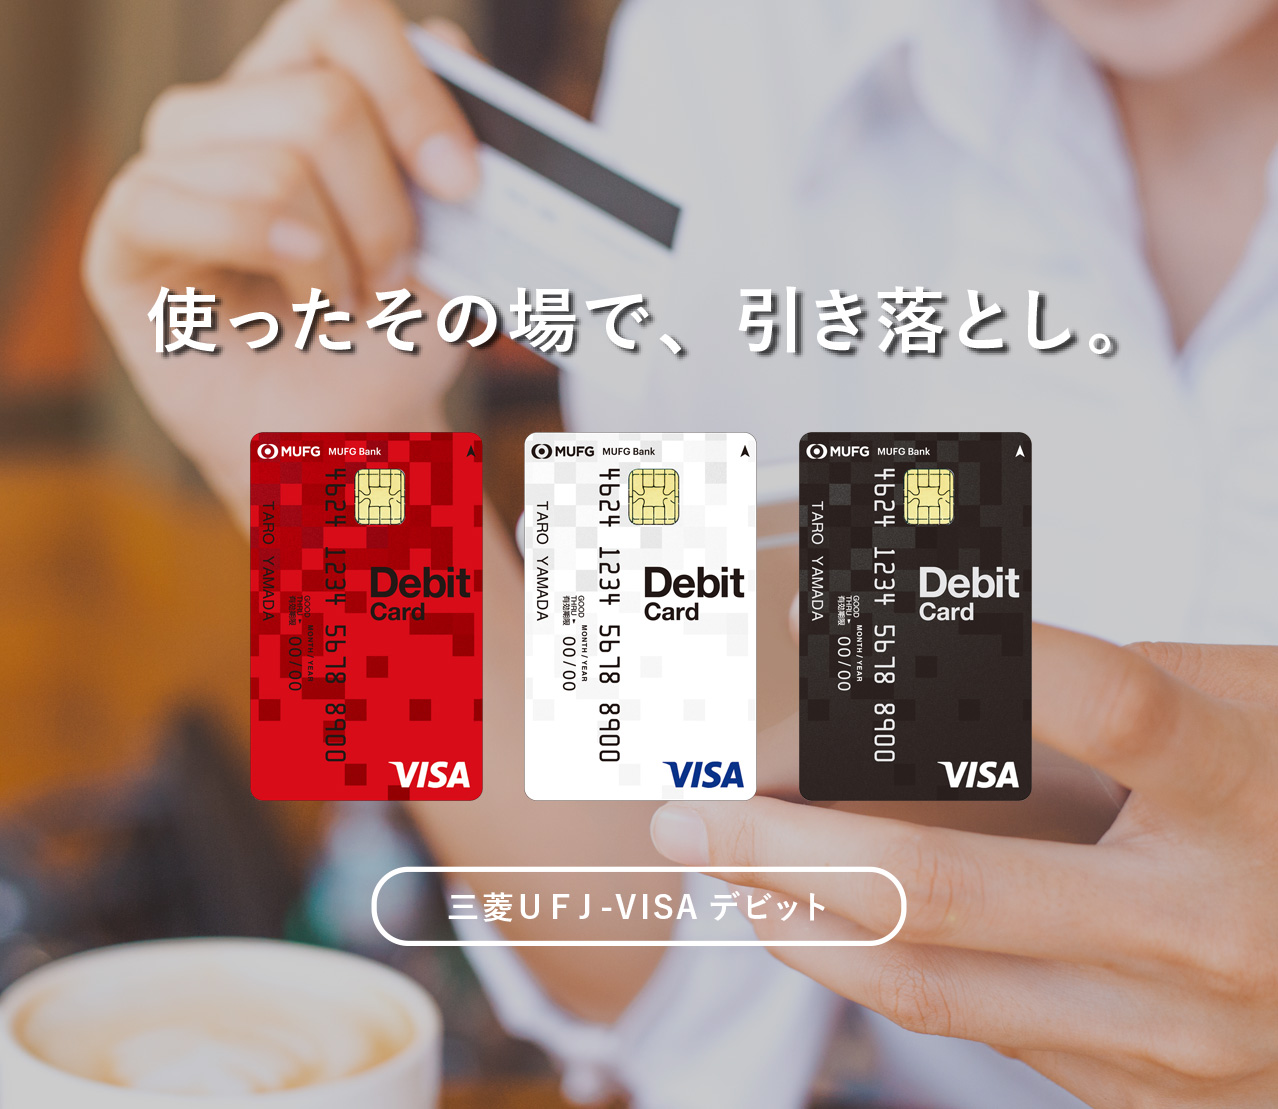 三菱ｕｆｊ Visaデビット入会ご案内ページ 三菱ｕｆｊ銀行